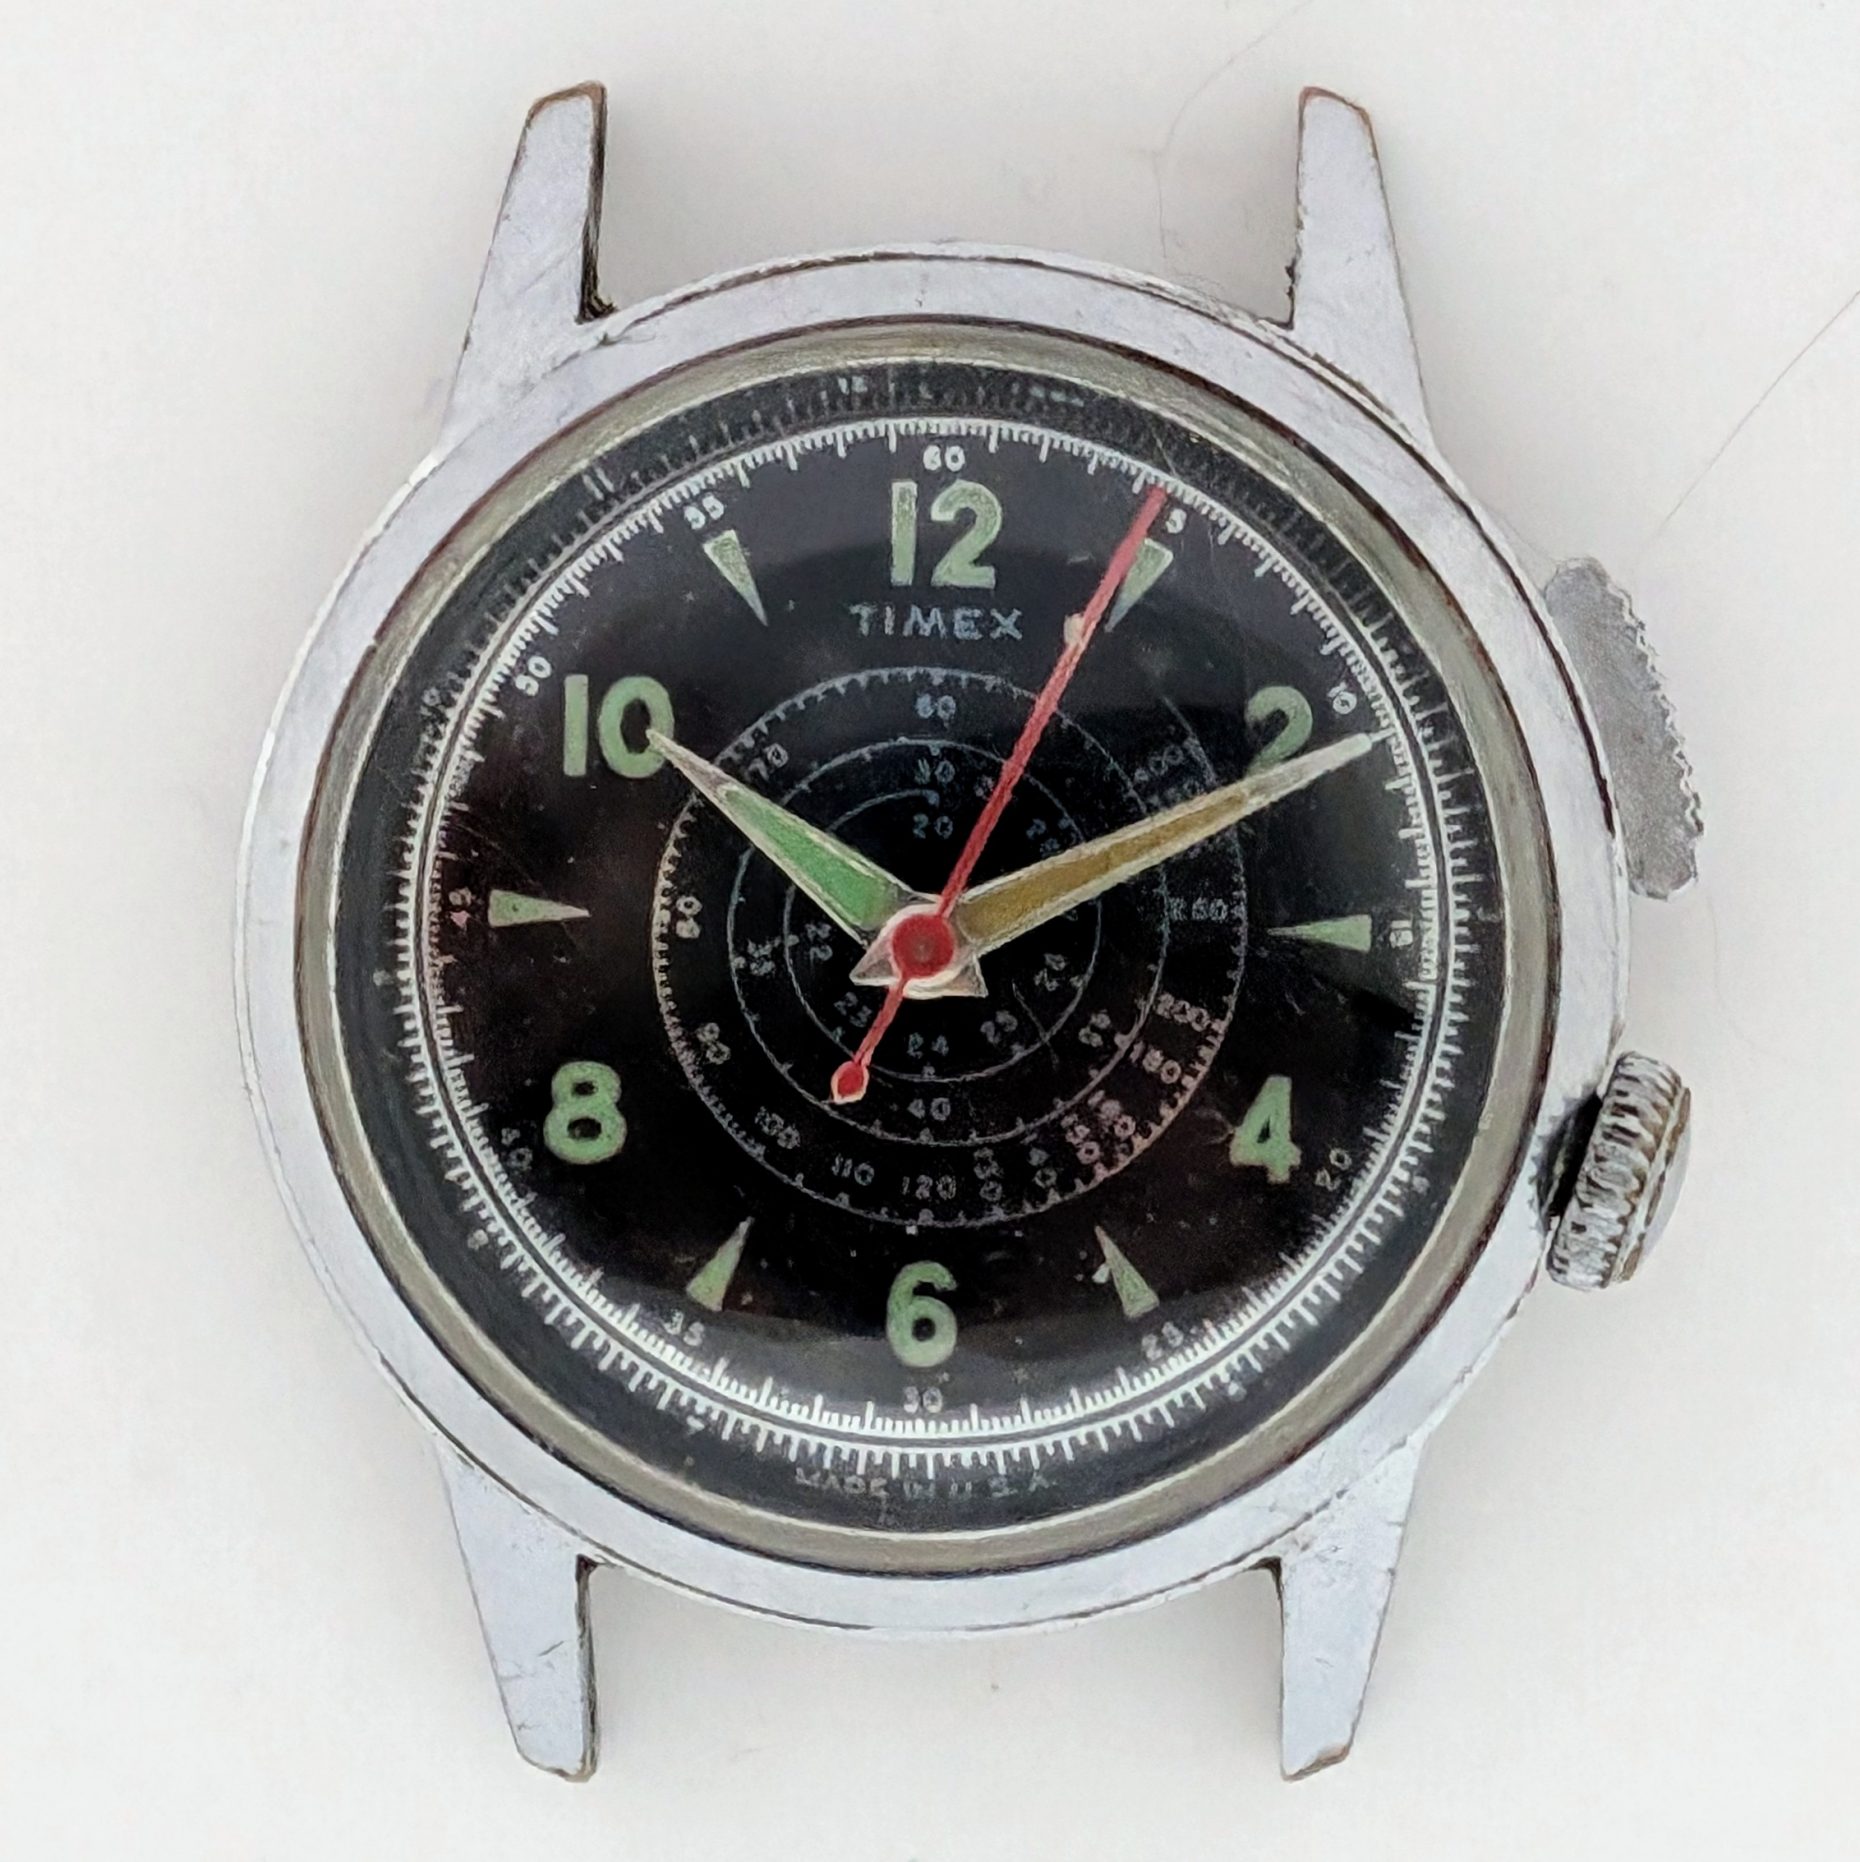 Timex Southampton 1237 2259 [1959]